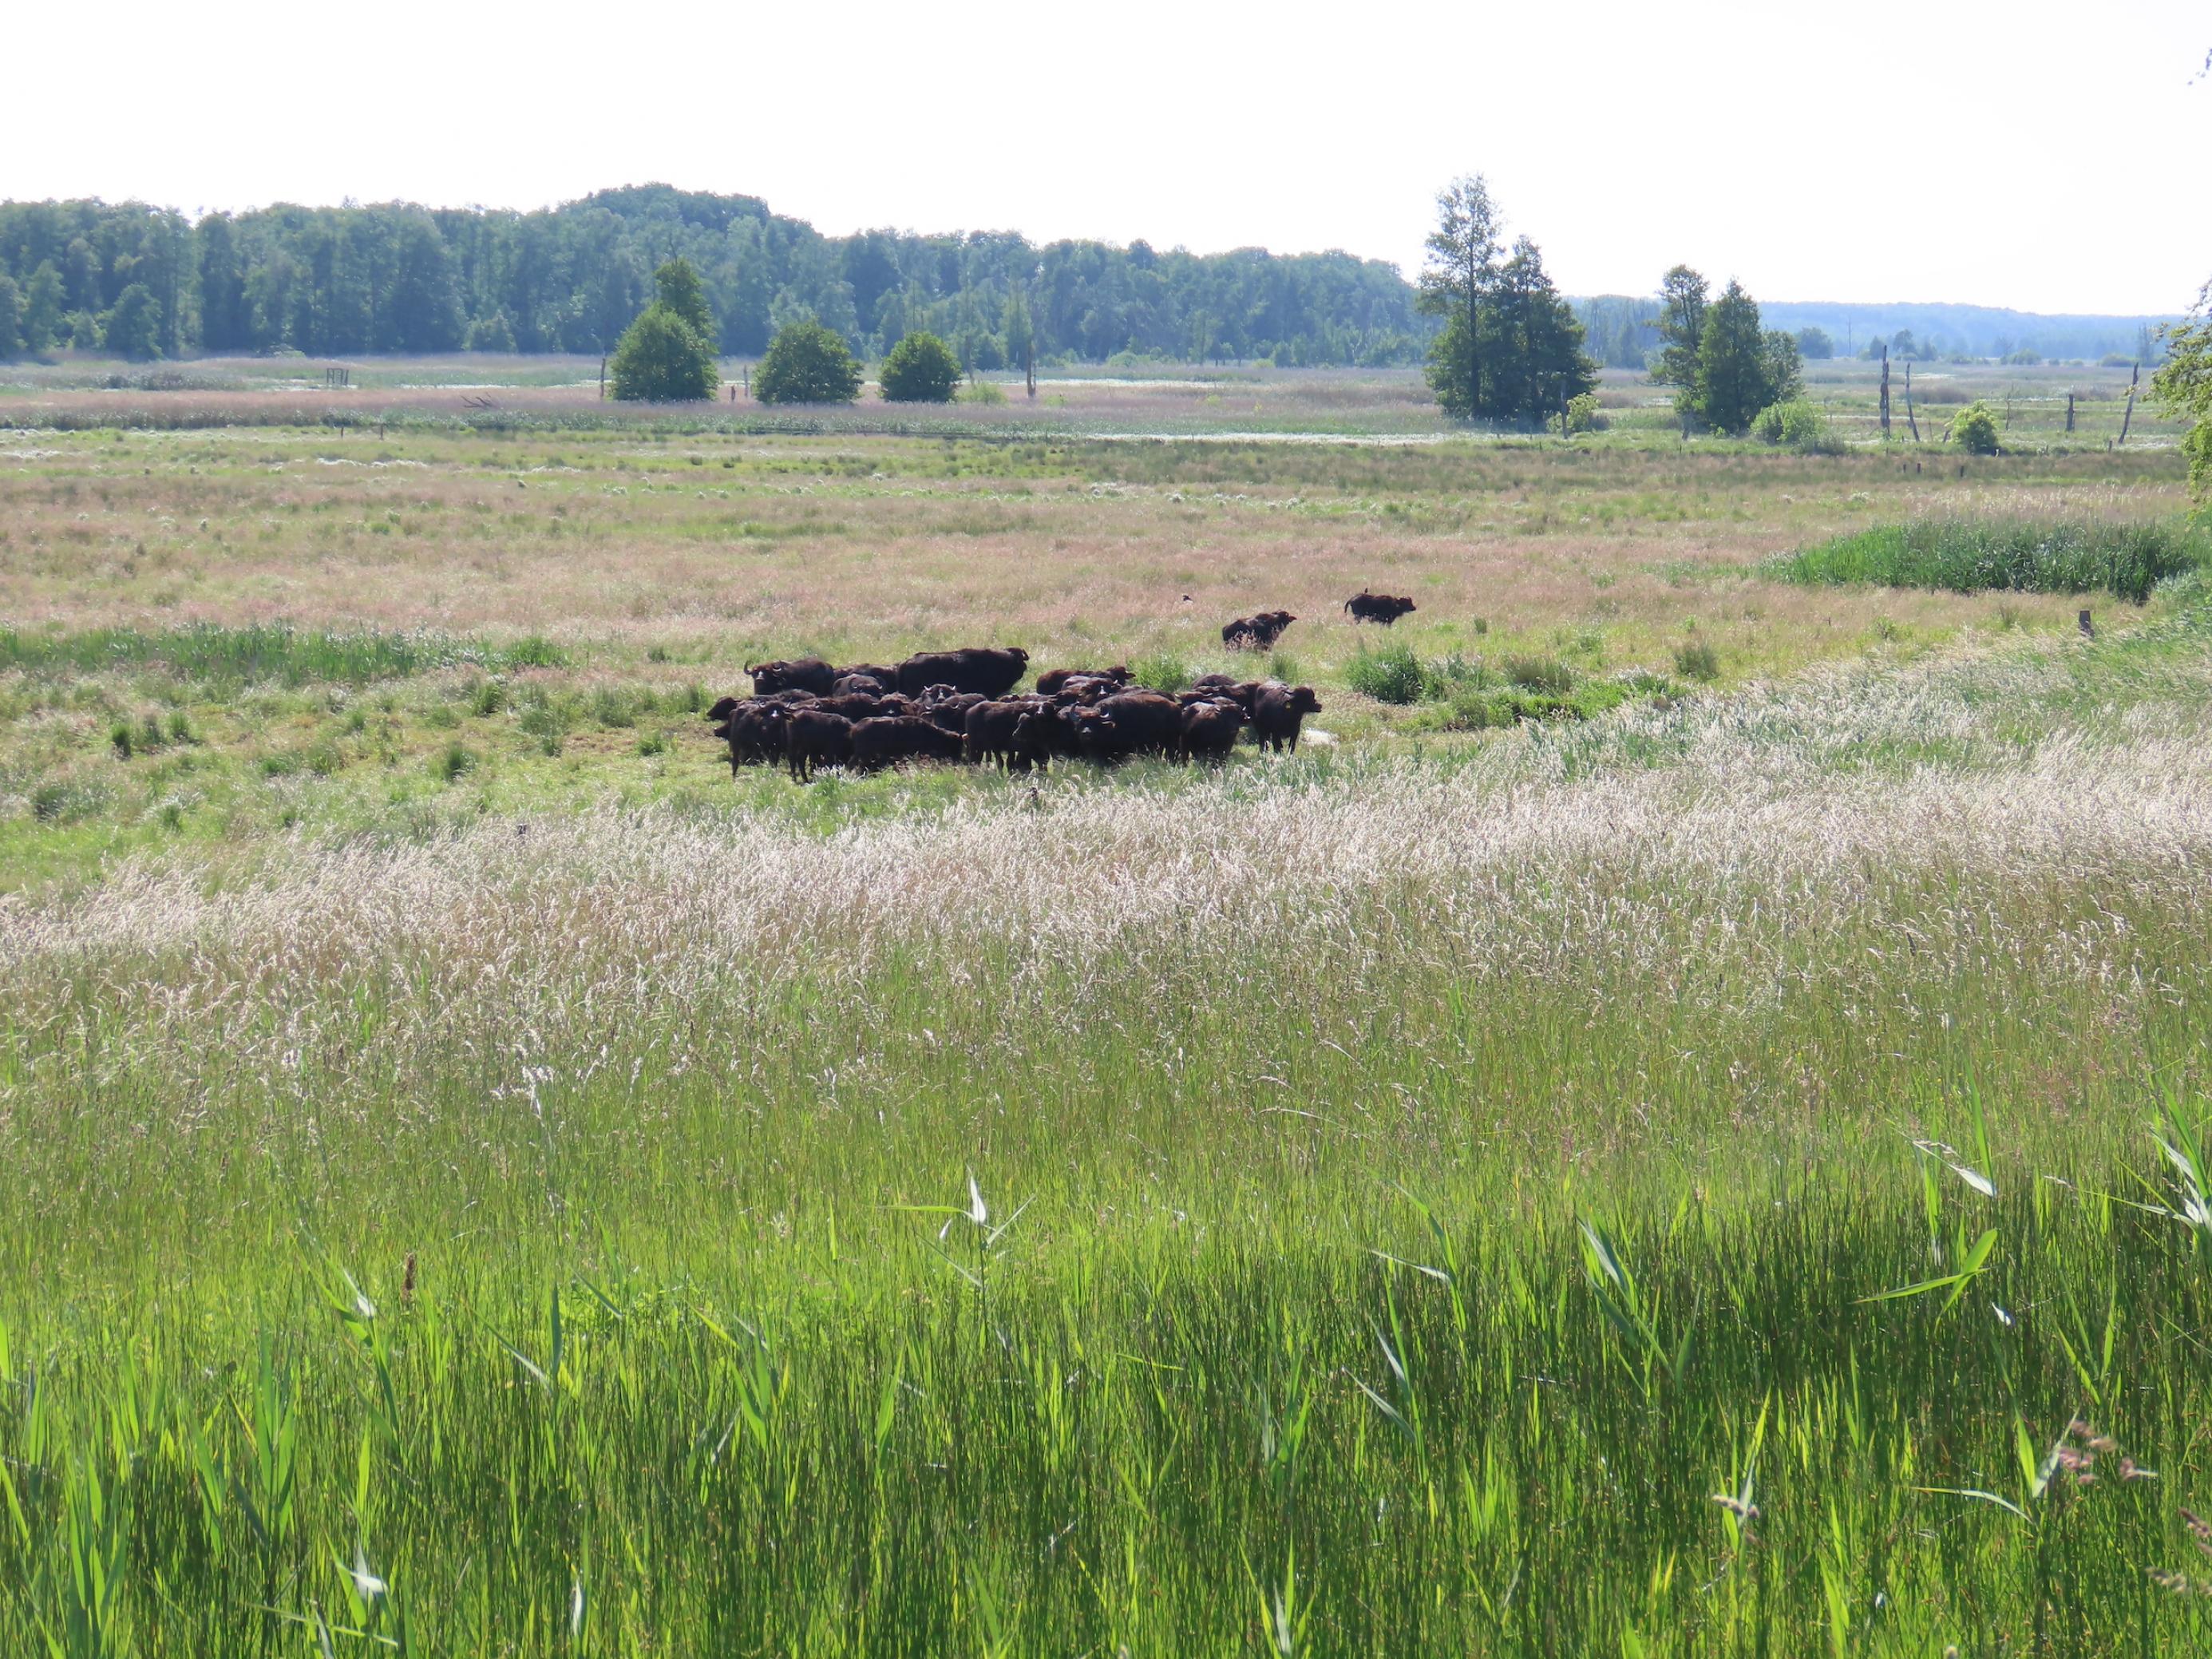 Rund um die Büffelherde eine weite Fläche, die mit Gras, Seggen und Schilf bewachsen ist.